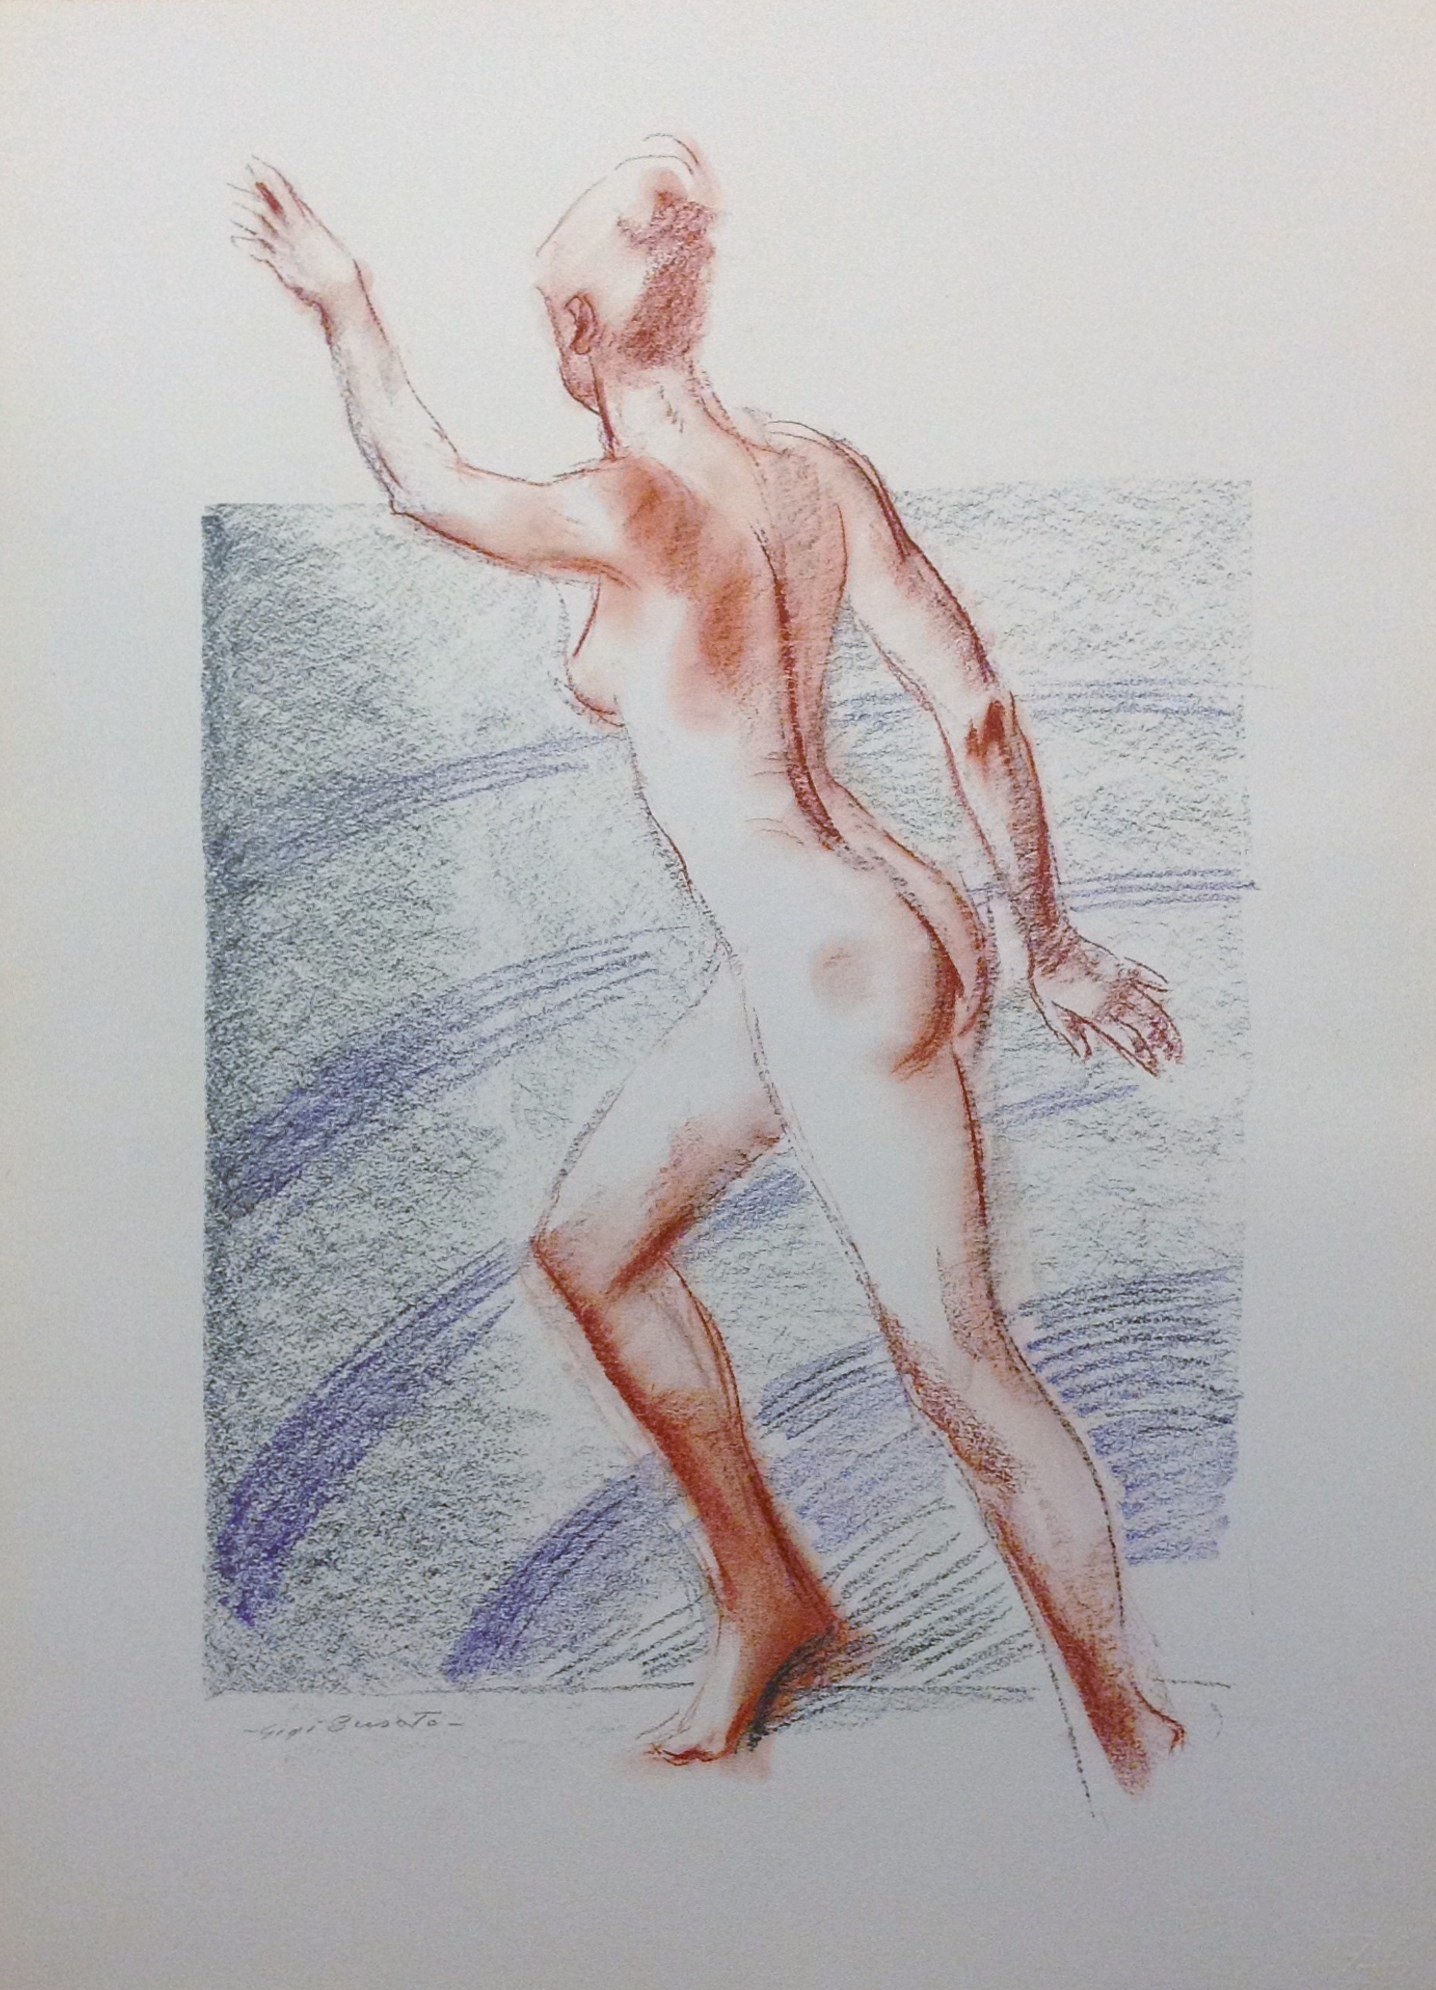 Nudo di donna disegno astratto di donna nuda un movimenti di Gigi Busato, disegno a pastello su carta a colori, collezione di famiglia